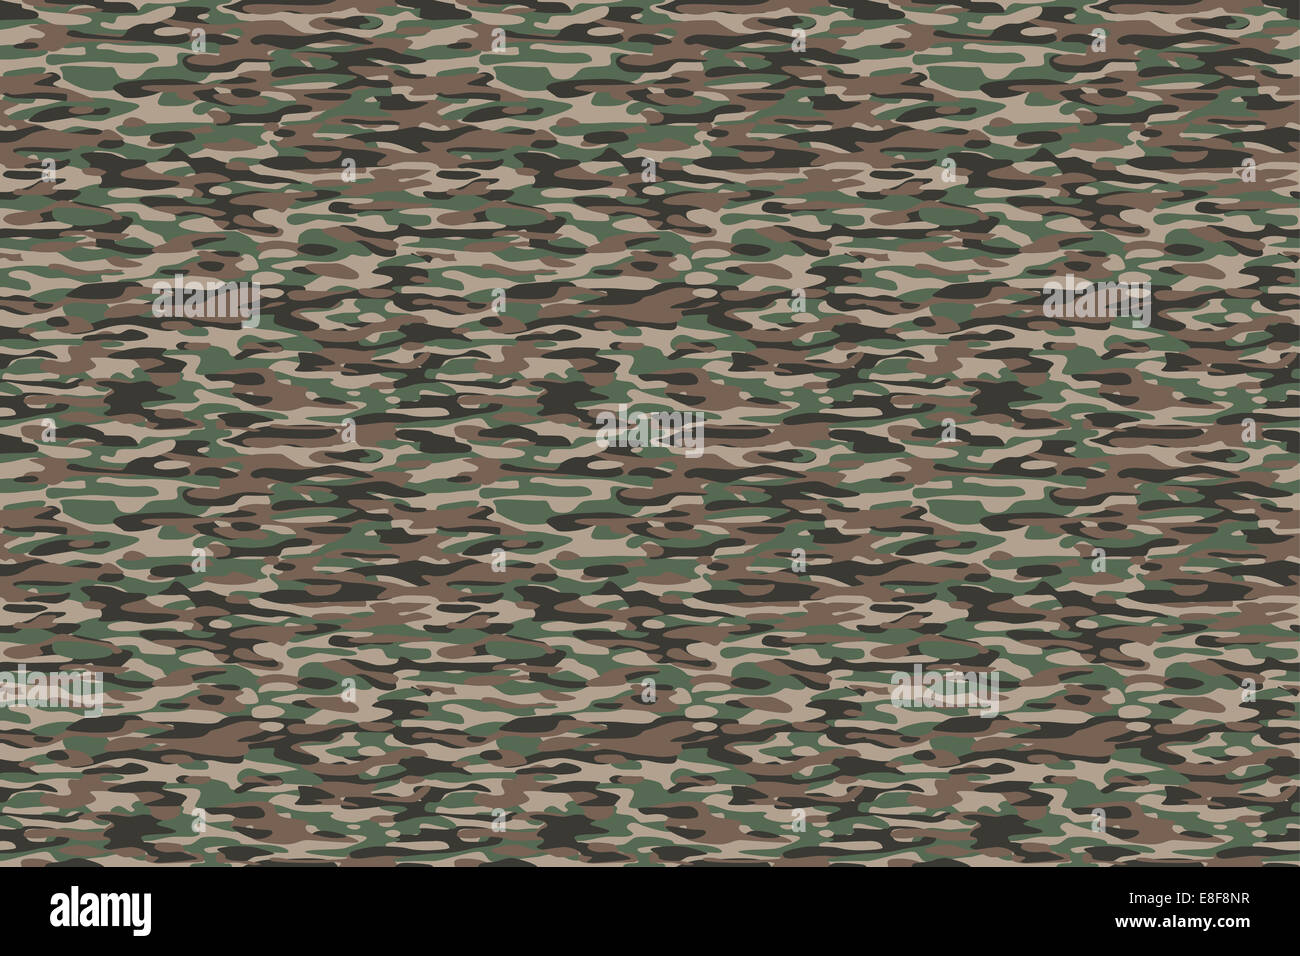 Camouflage-Olive Brown Hintergrund - Olive braun militärische Tarnung Textile Muster. Allen Seiten zusammenpassen perfekt nahtlos. Stockfoto